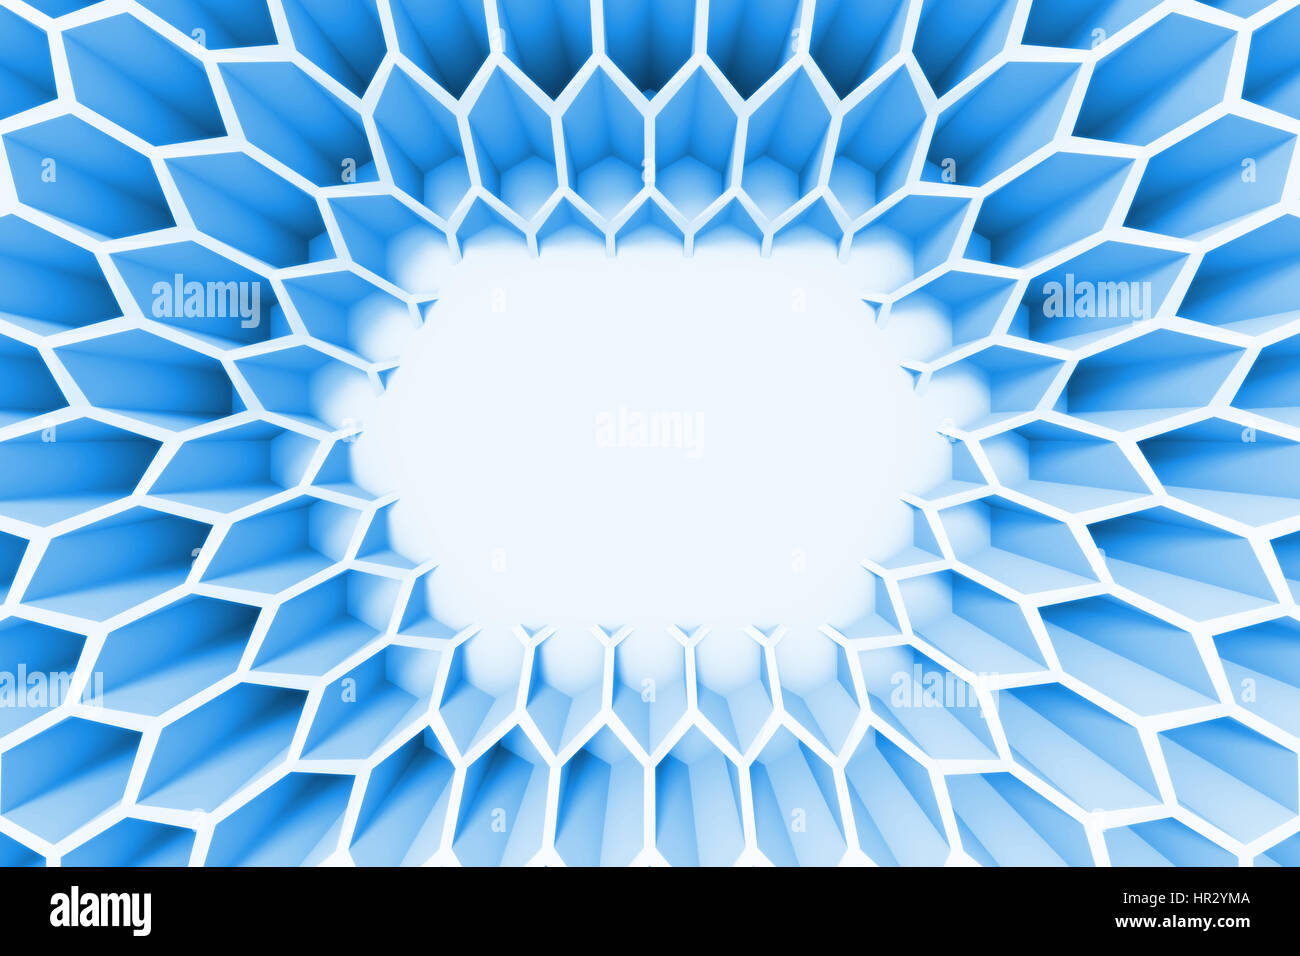 Résumé fond bleu avec une structure de trame hexagonale Banque D'Images